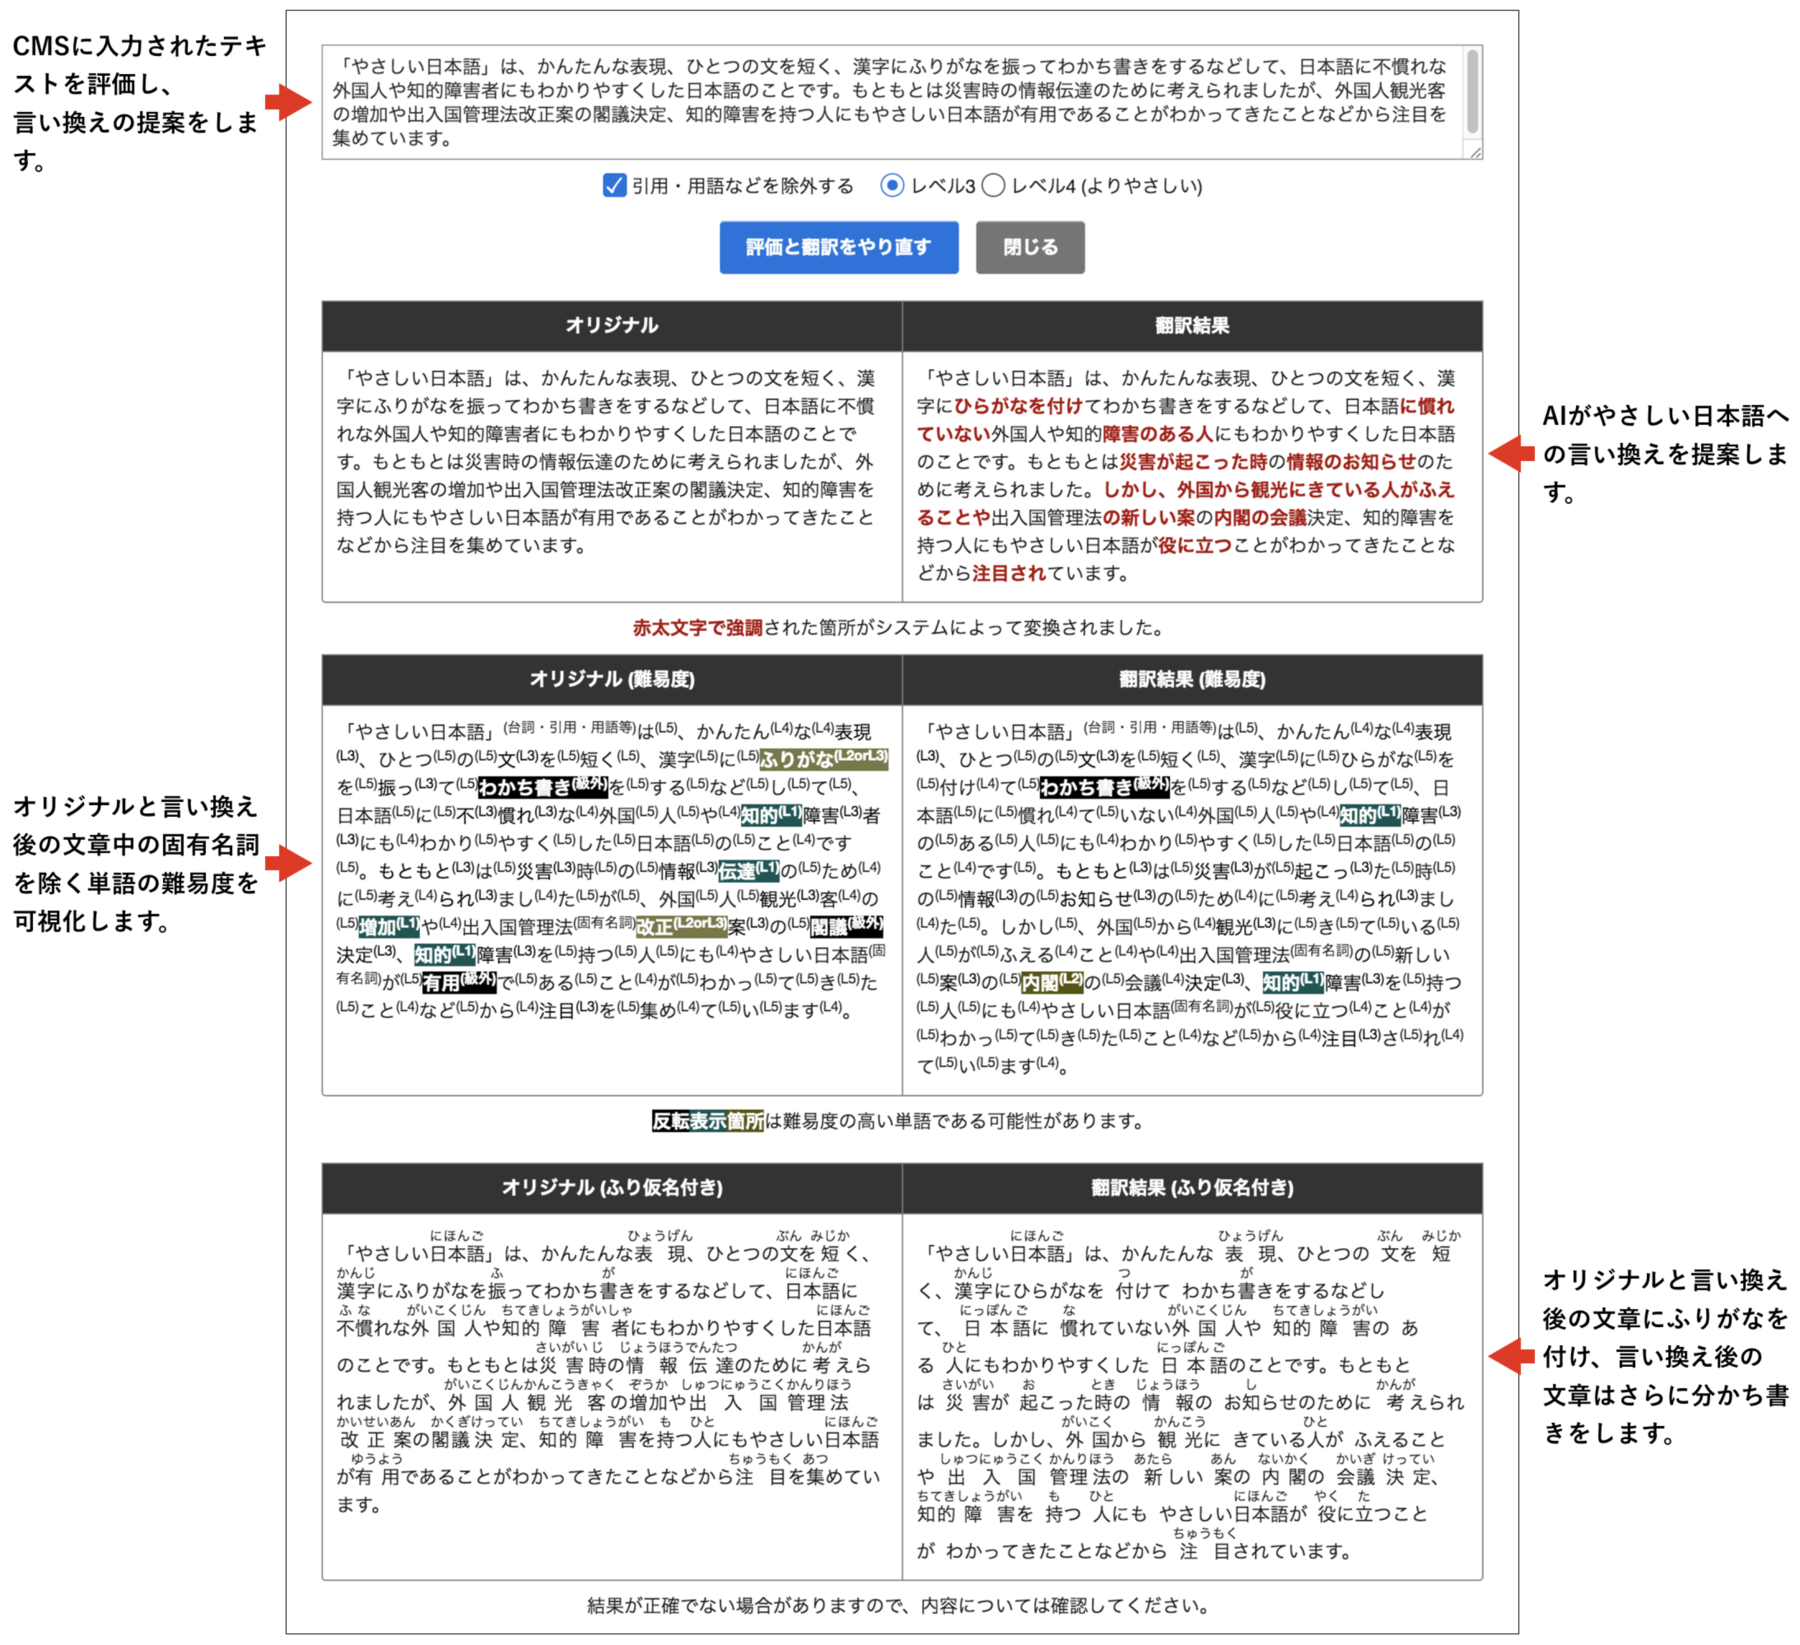 やさしい日本語作成支援機能の画面表示